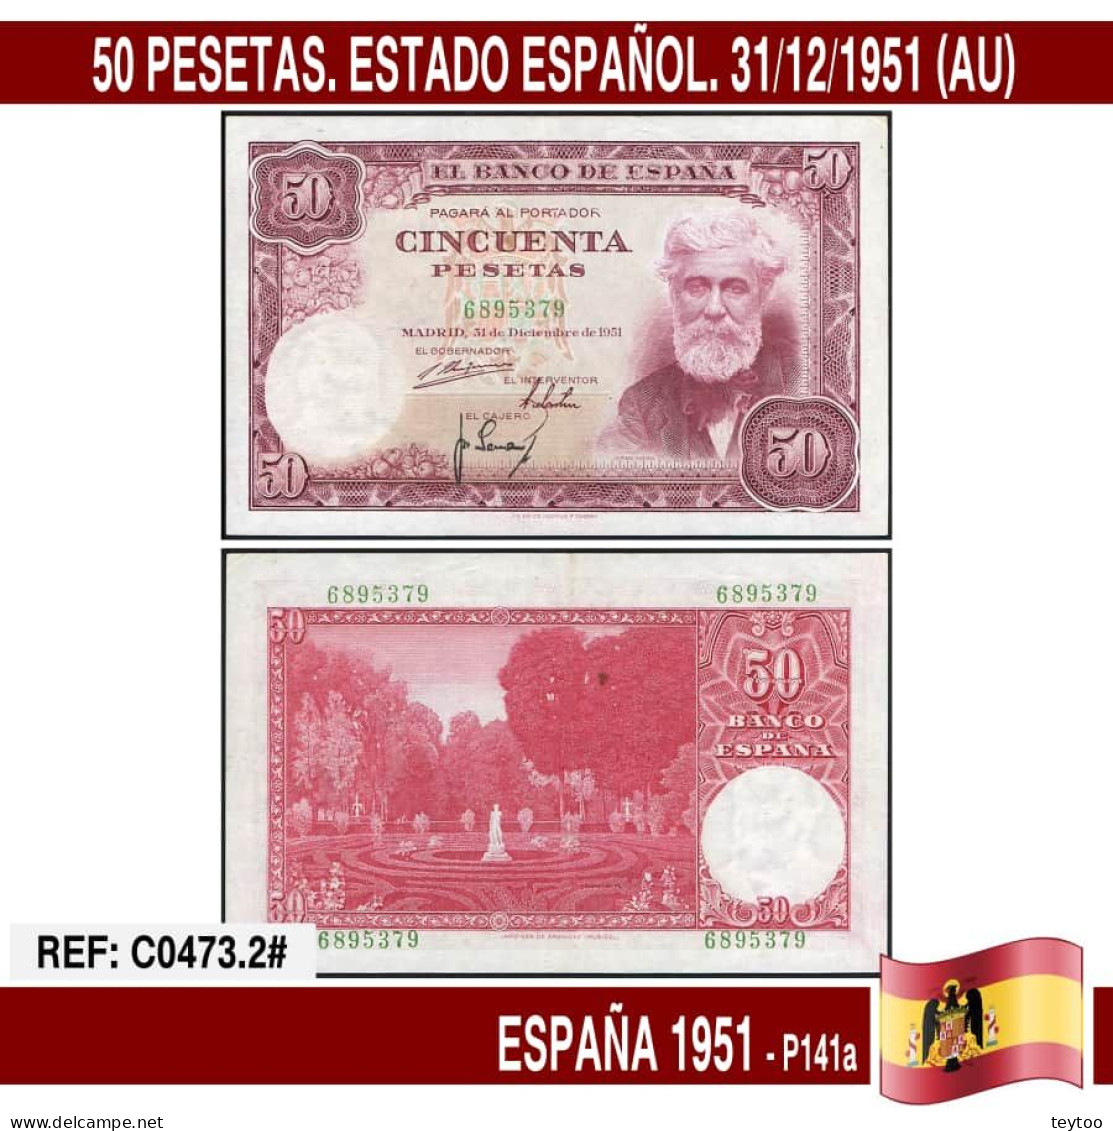 C0473.2# España 1951. 50 Pts. Estado Español (AU) P141a - 50 Pesetas